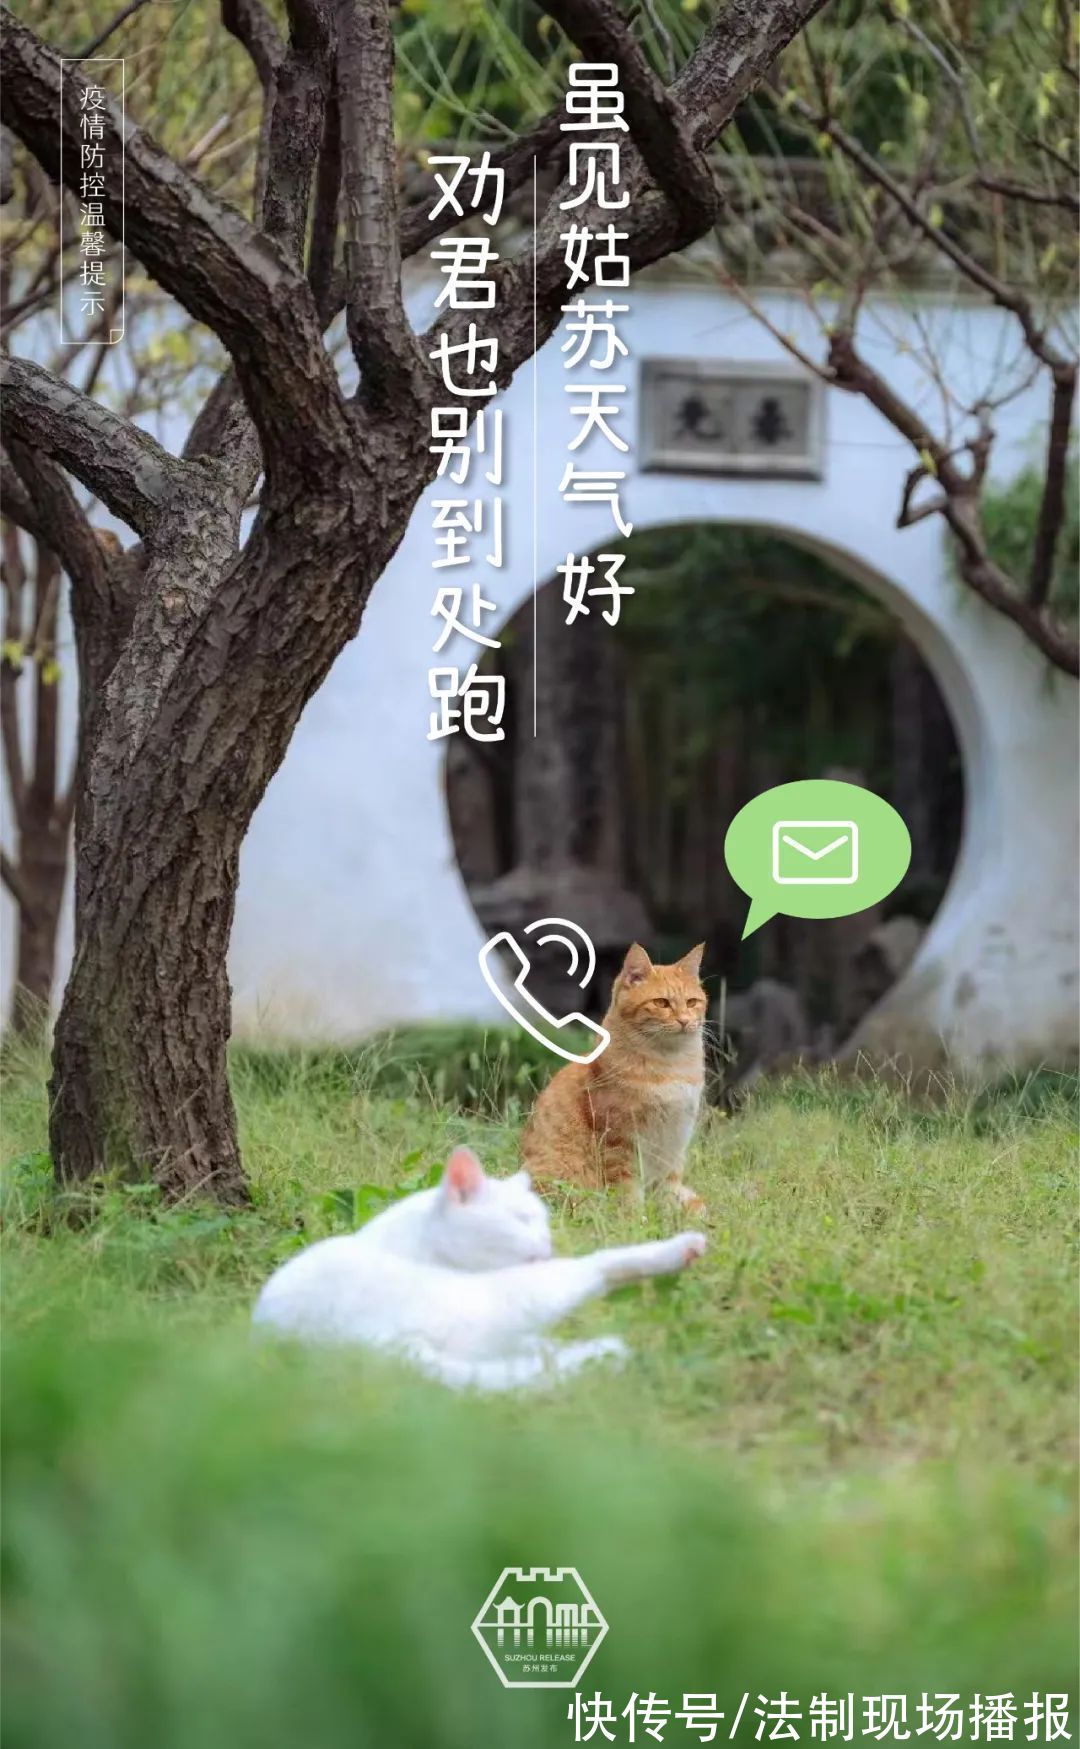 薛巍|苏州园林的猫:“要摒牢!”